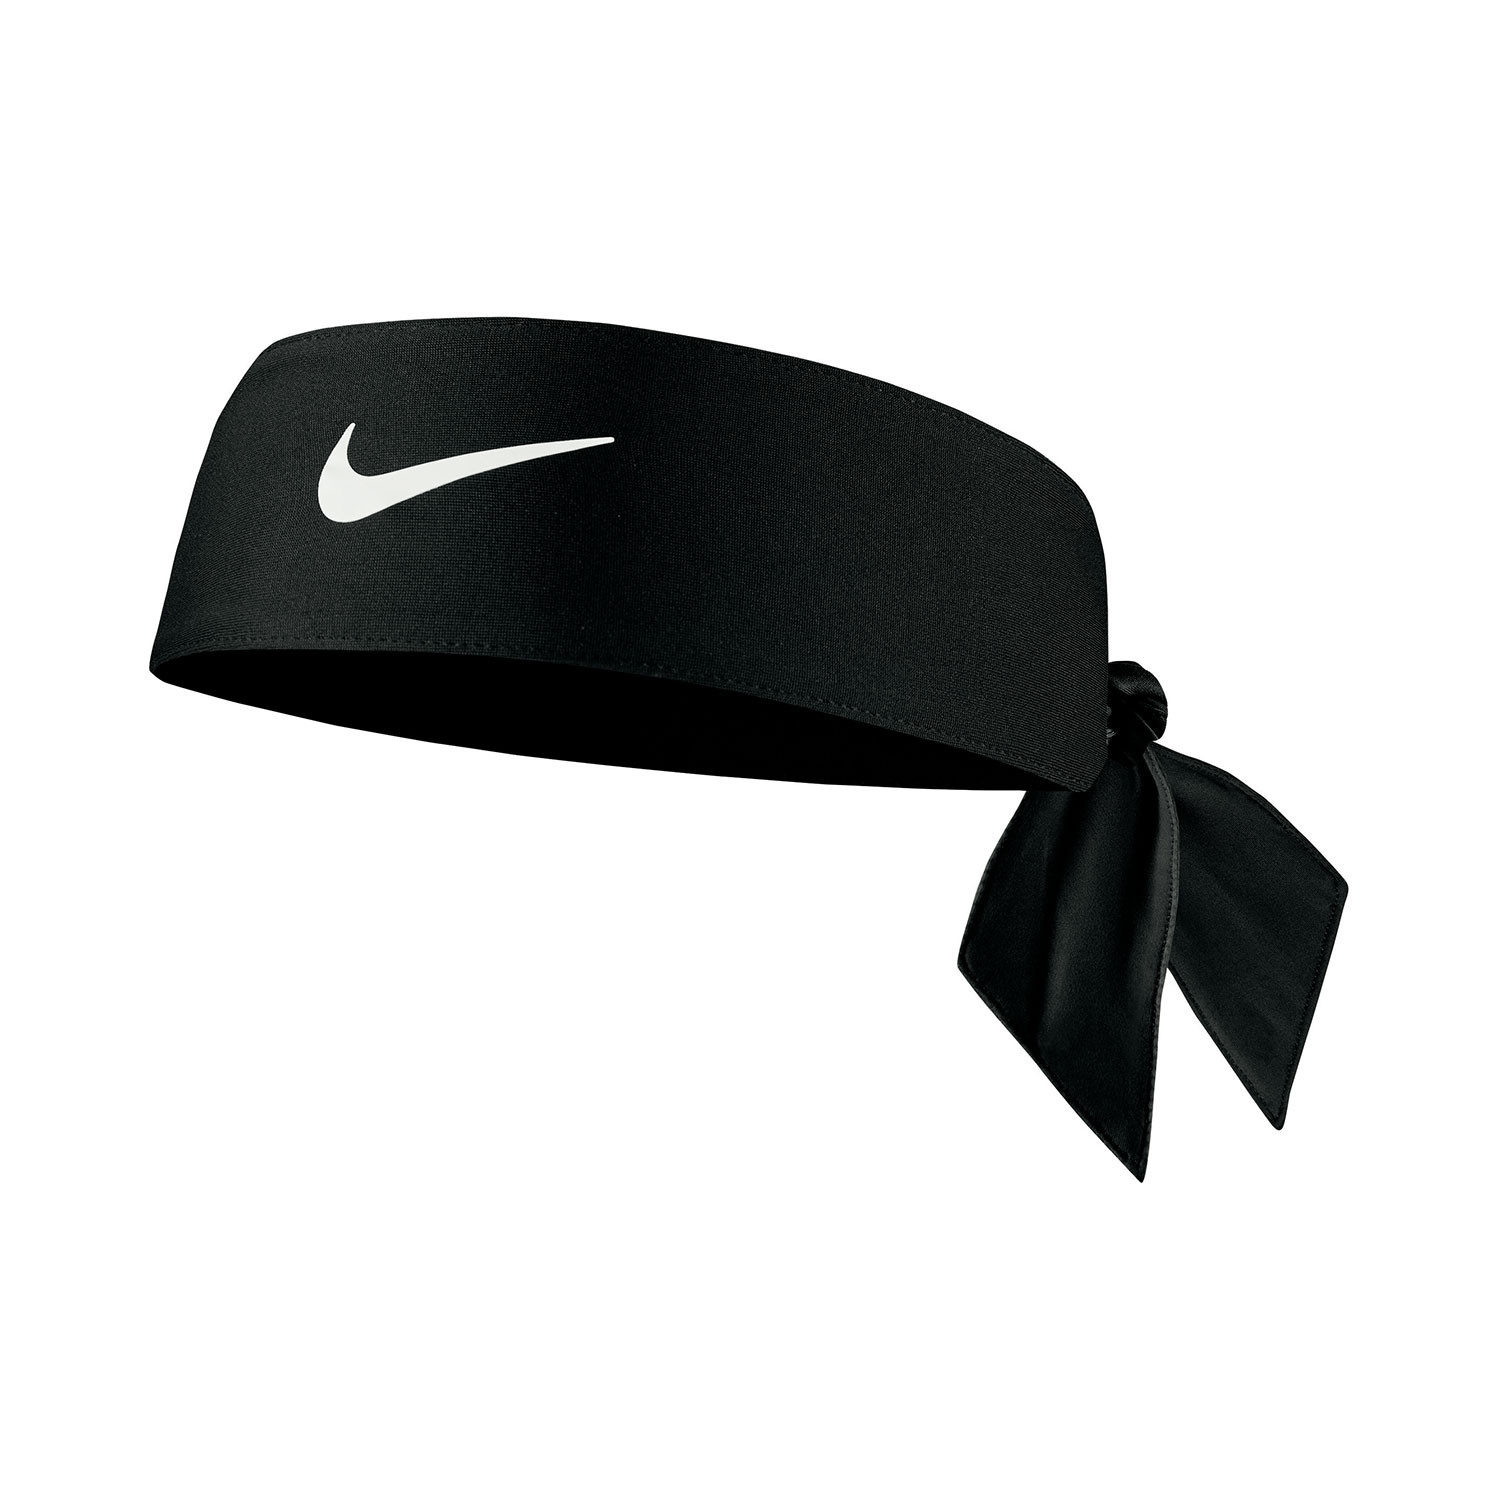 Nike dri-fit head tie 4.0 osfm